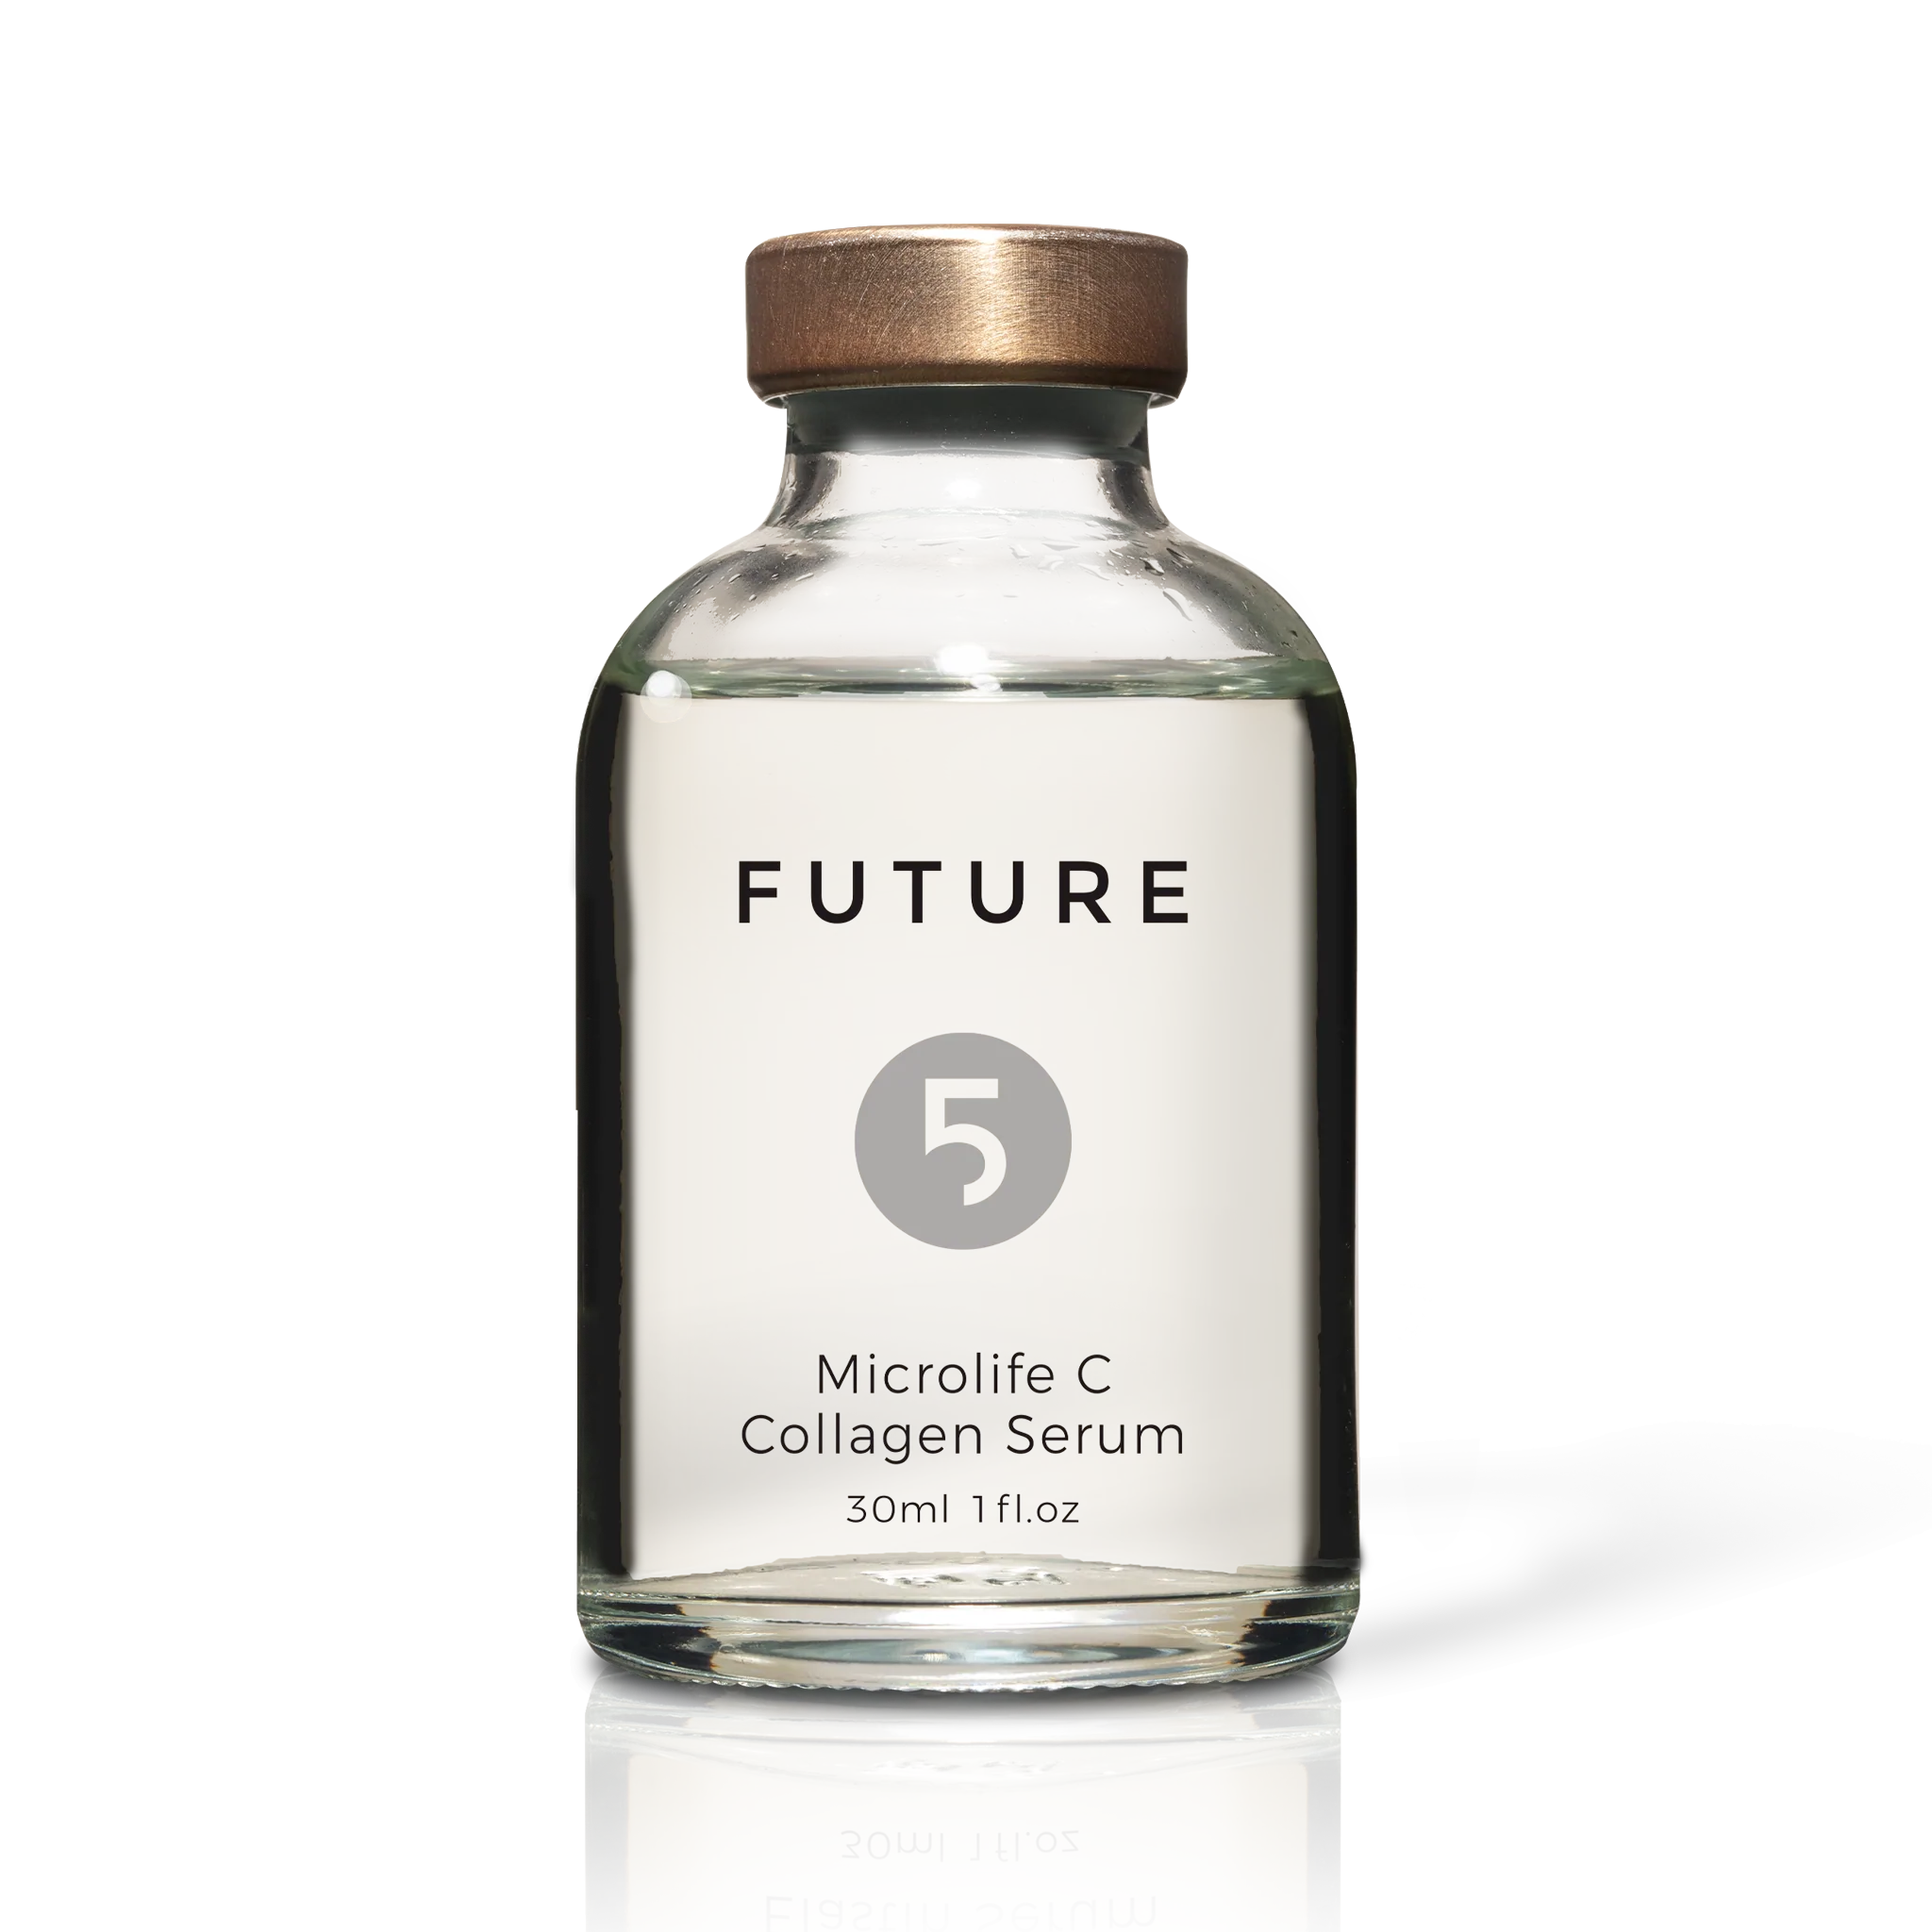 Future 5 Microlife C Collagen Serum Product